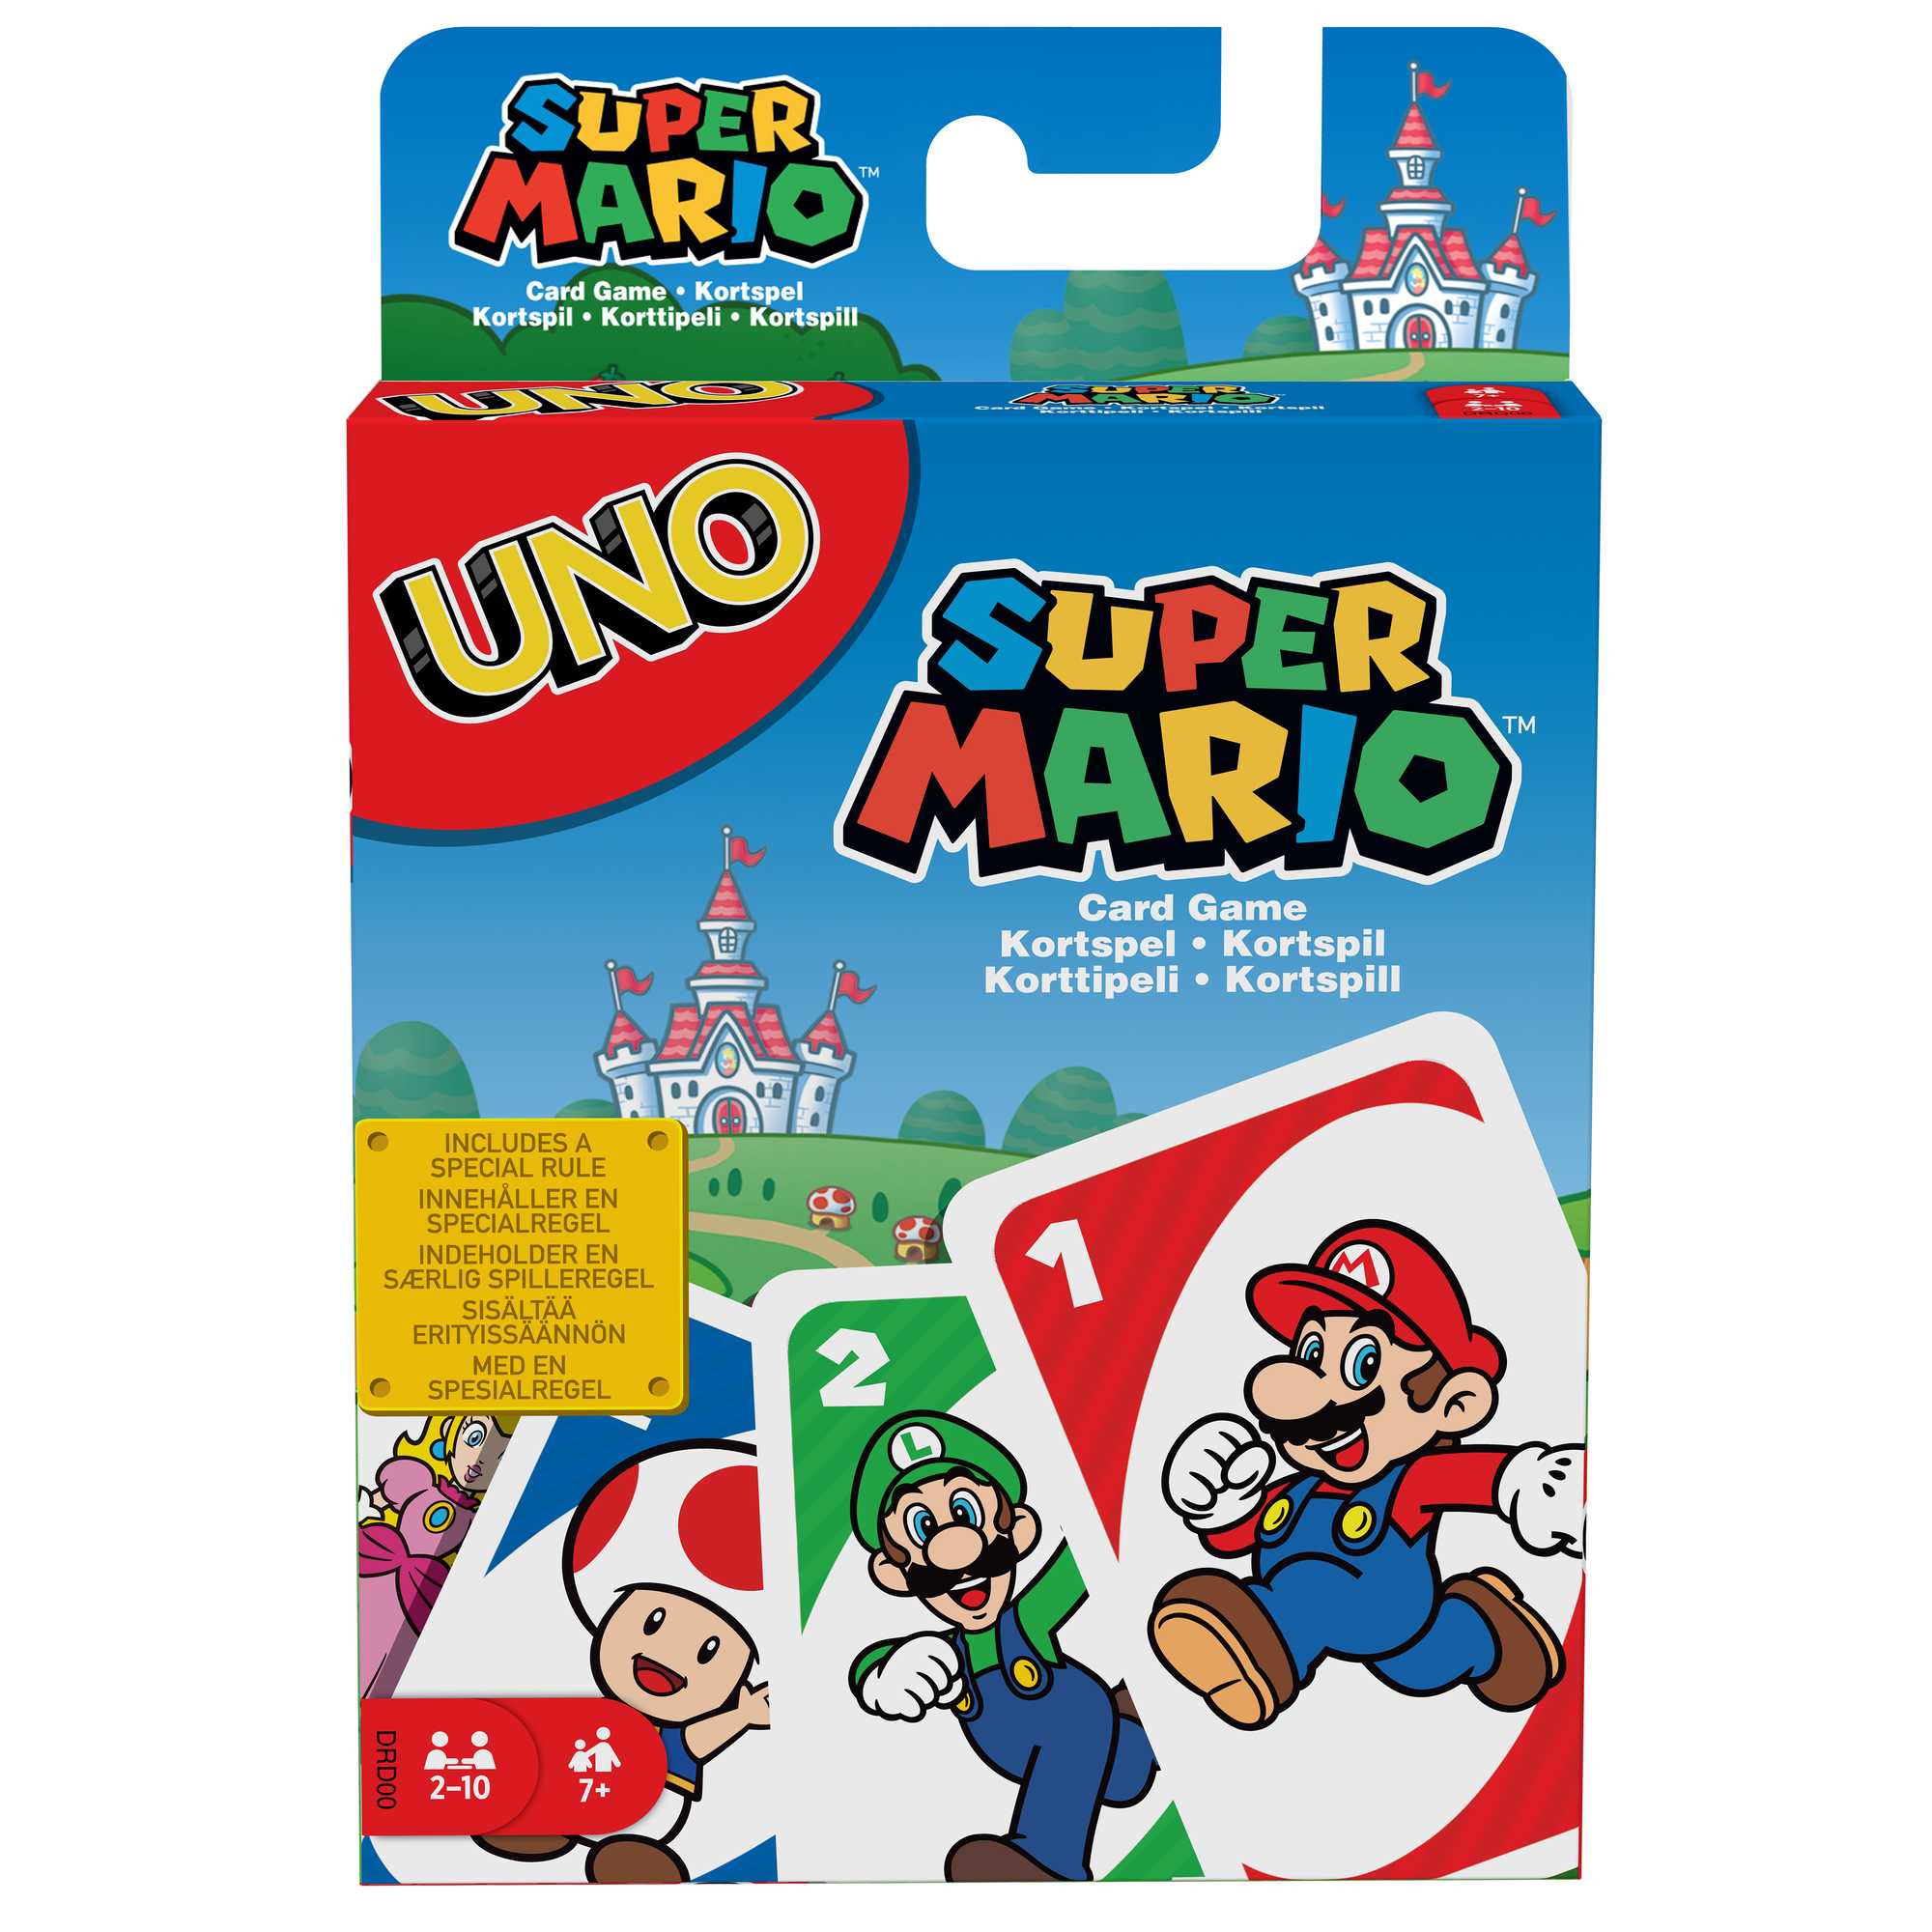 Mattel UNO Super Mario, You, Super Mario Bros, and a Game of UNO!